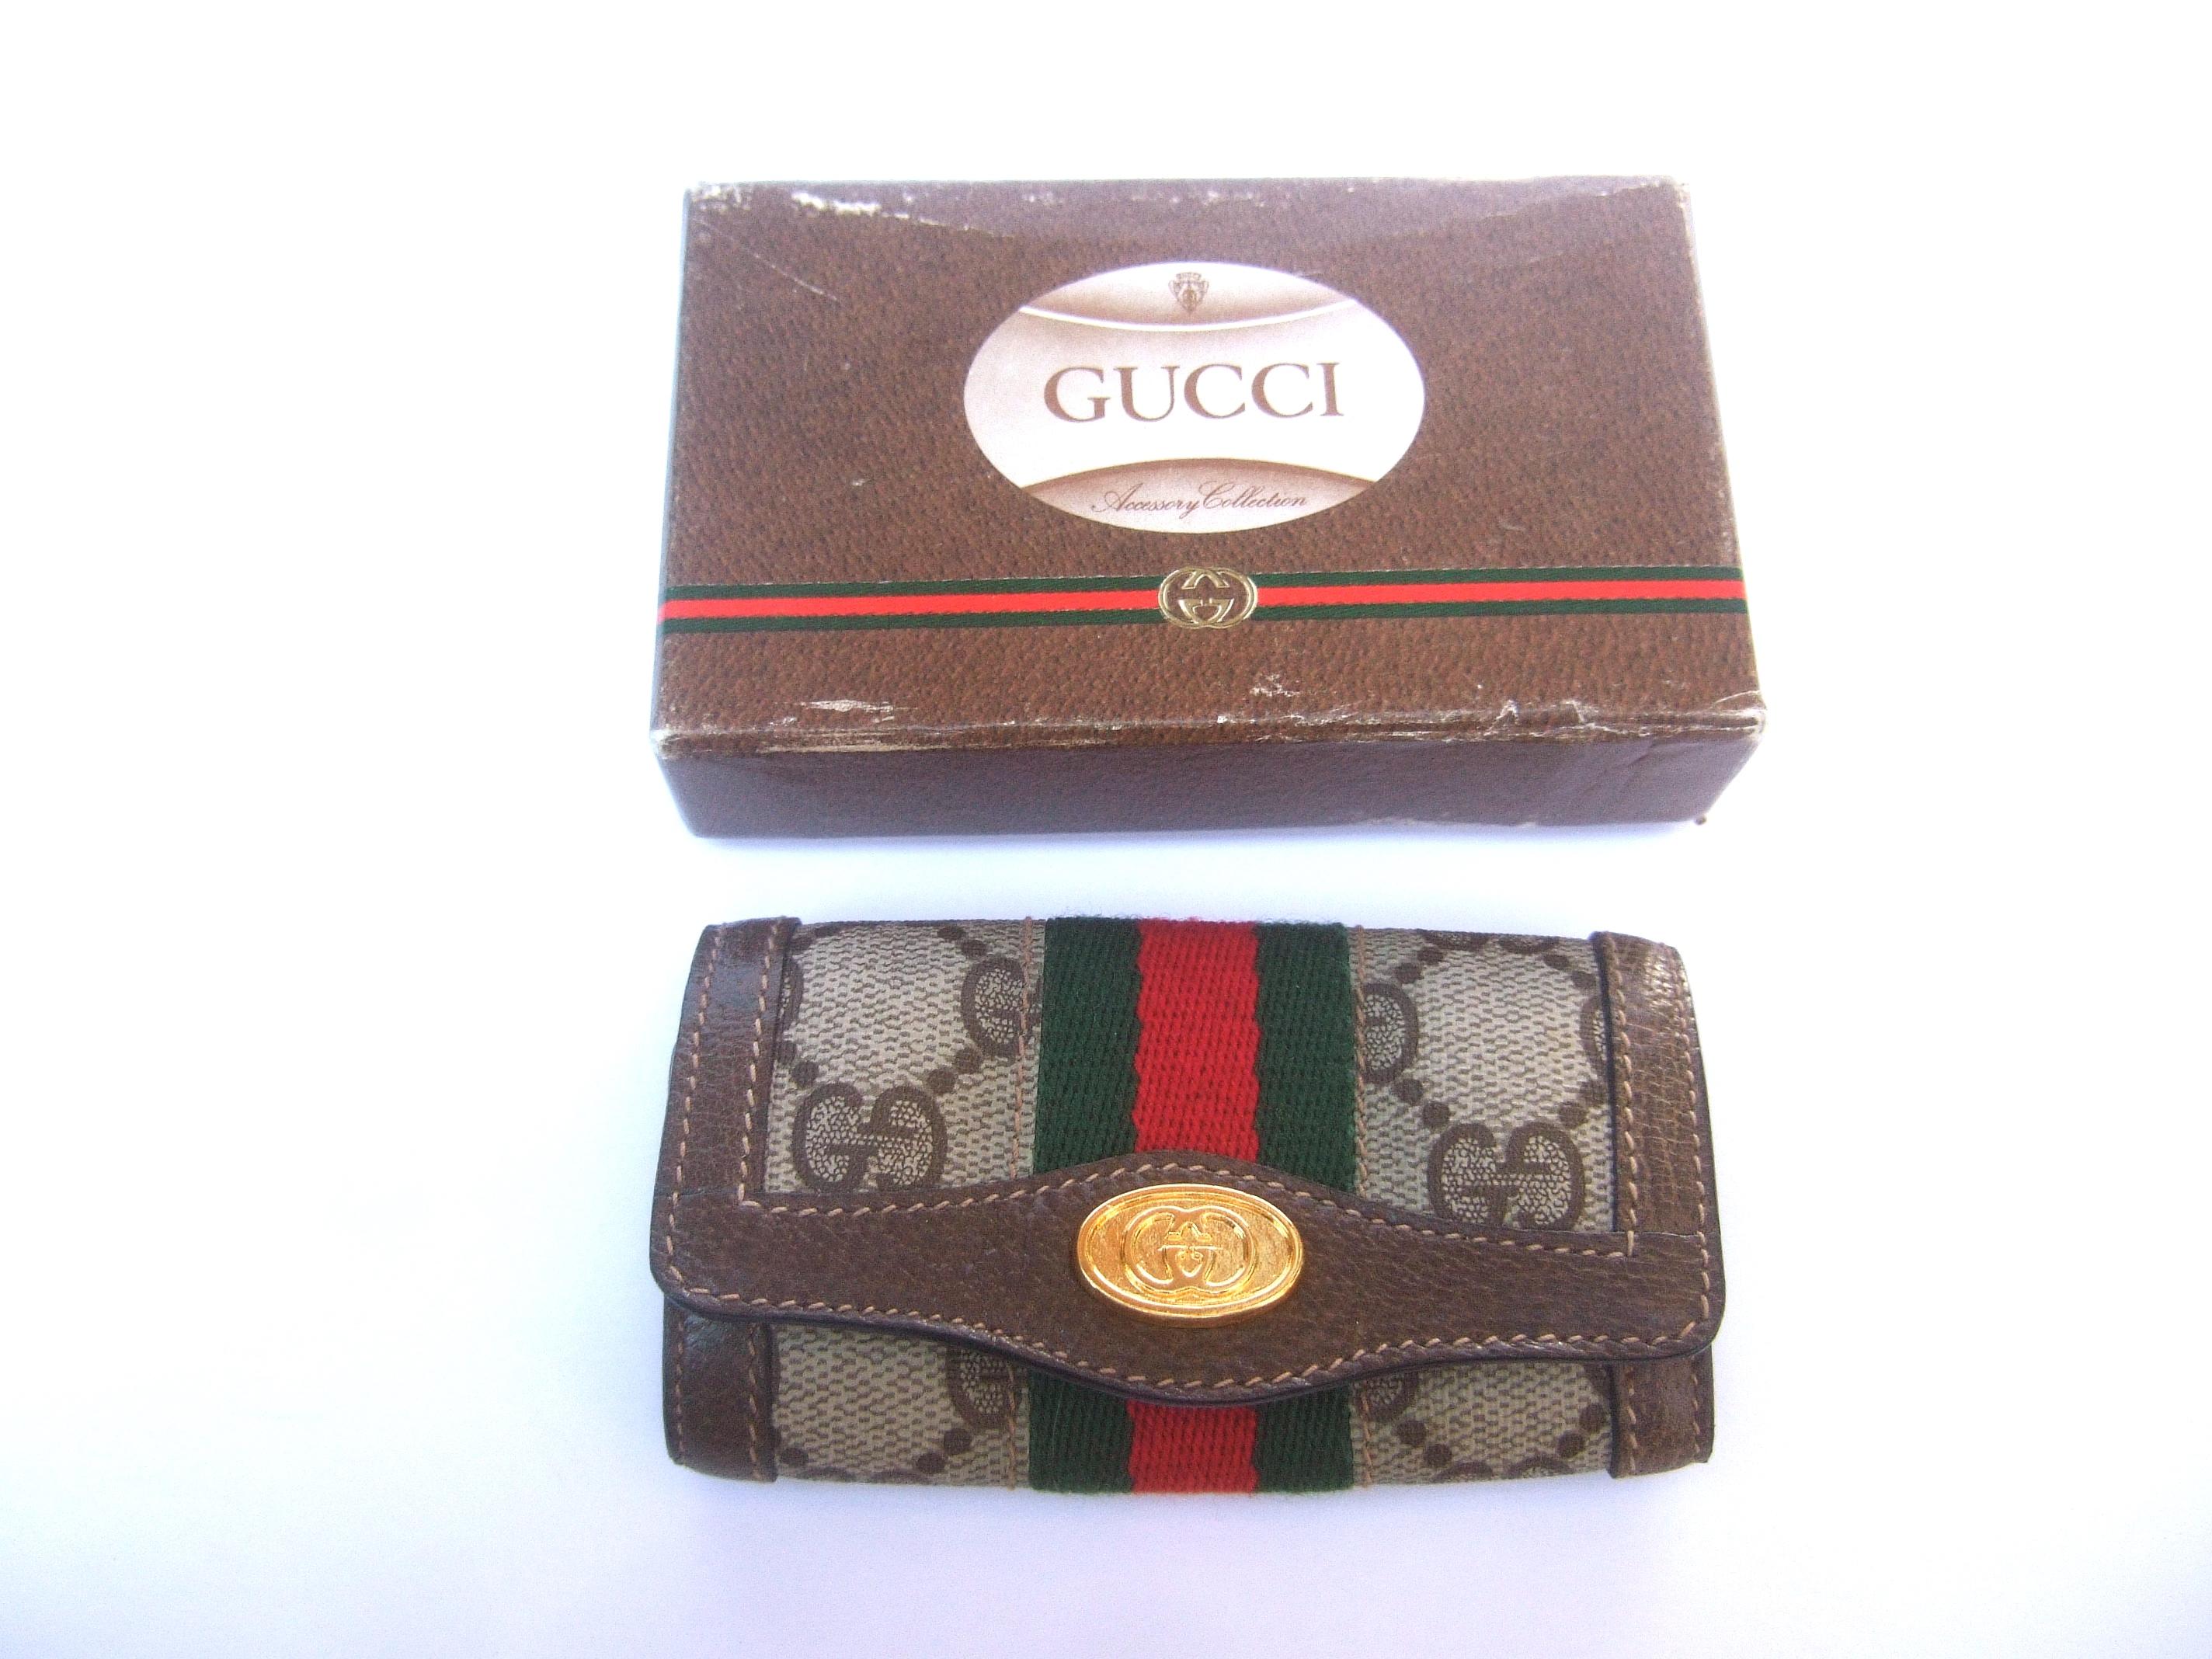 Gucci Vintage Key Chain Case in Gucci Presentation Box c 1980s 1